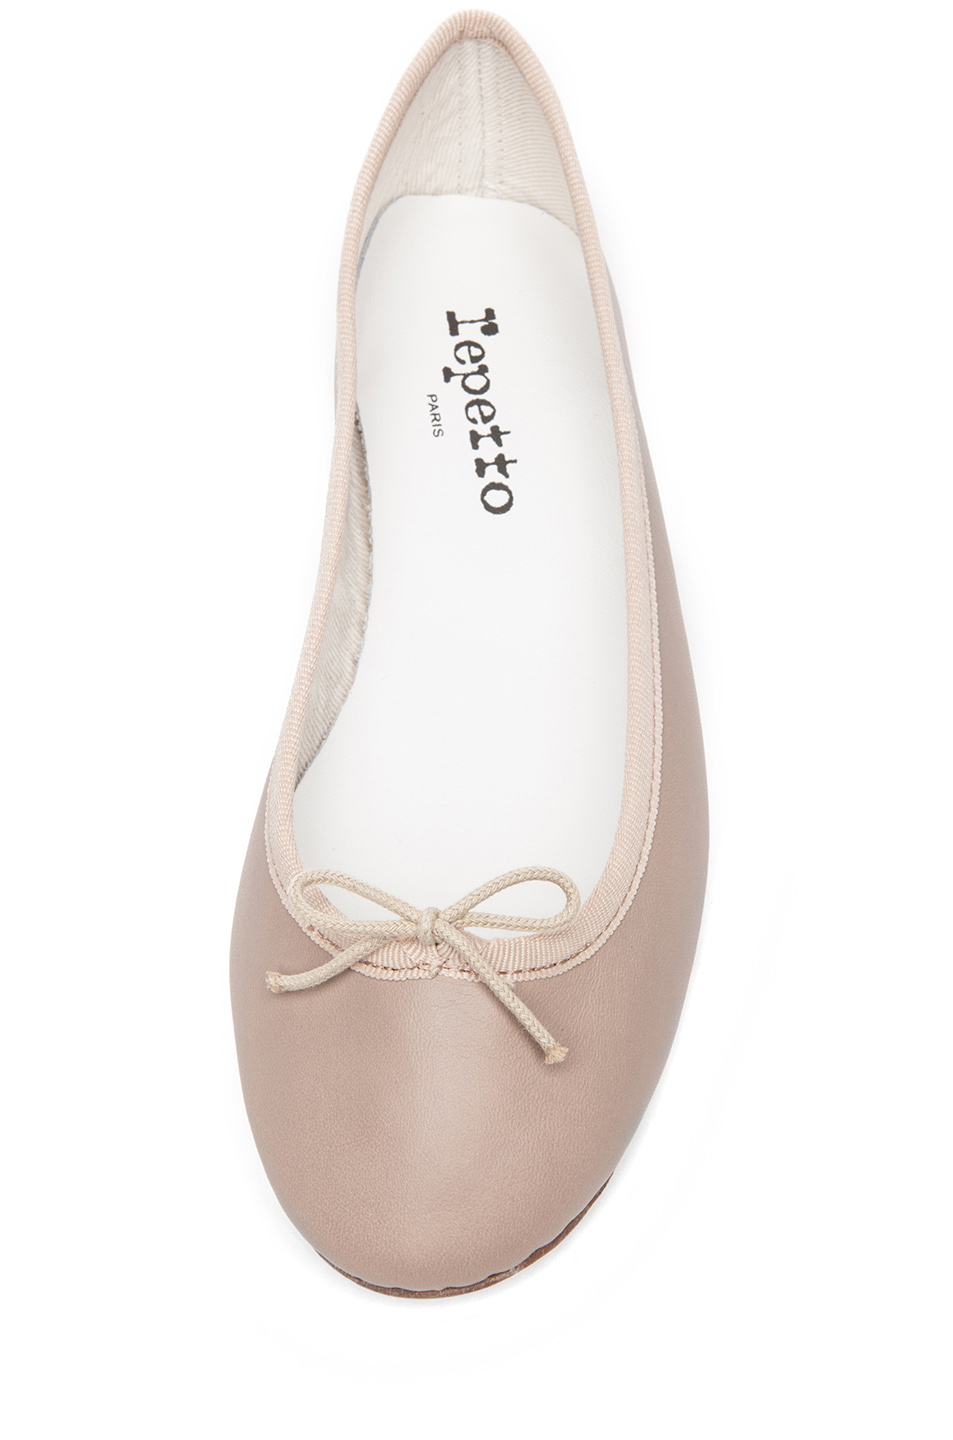 Pretty.Random.Things.: Shoe Review: REPETTO Ballerina Cendrillon flats